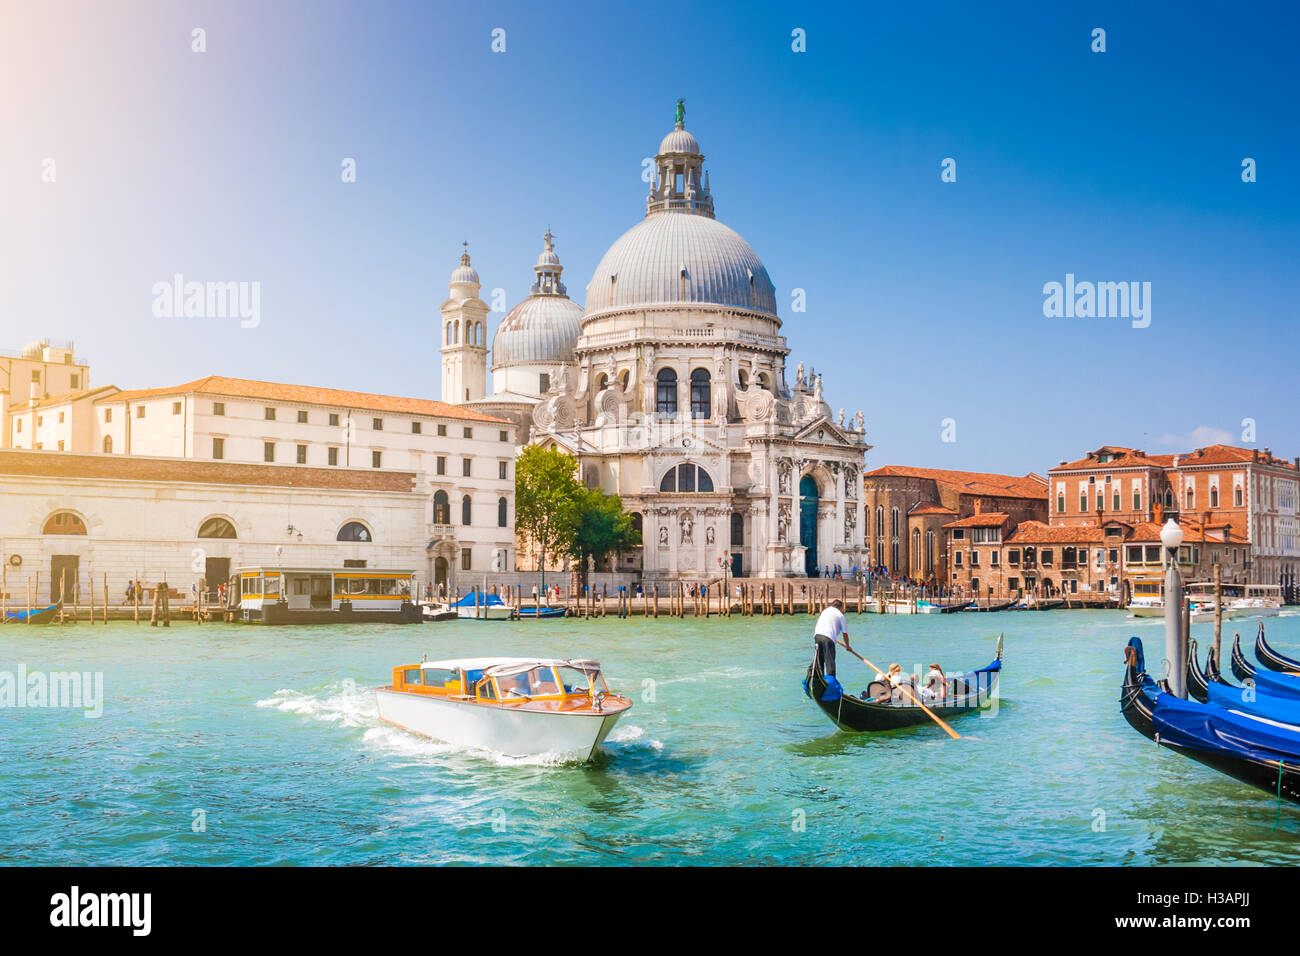 Traditional Gondola and boat on Canal Grande with historic Basilica di Santa Maria della Salute in the background, Venice, Italy Stock Photo